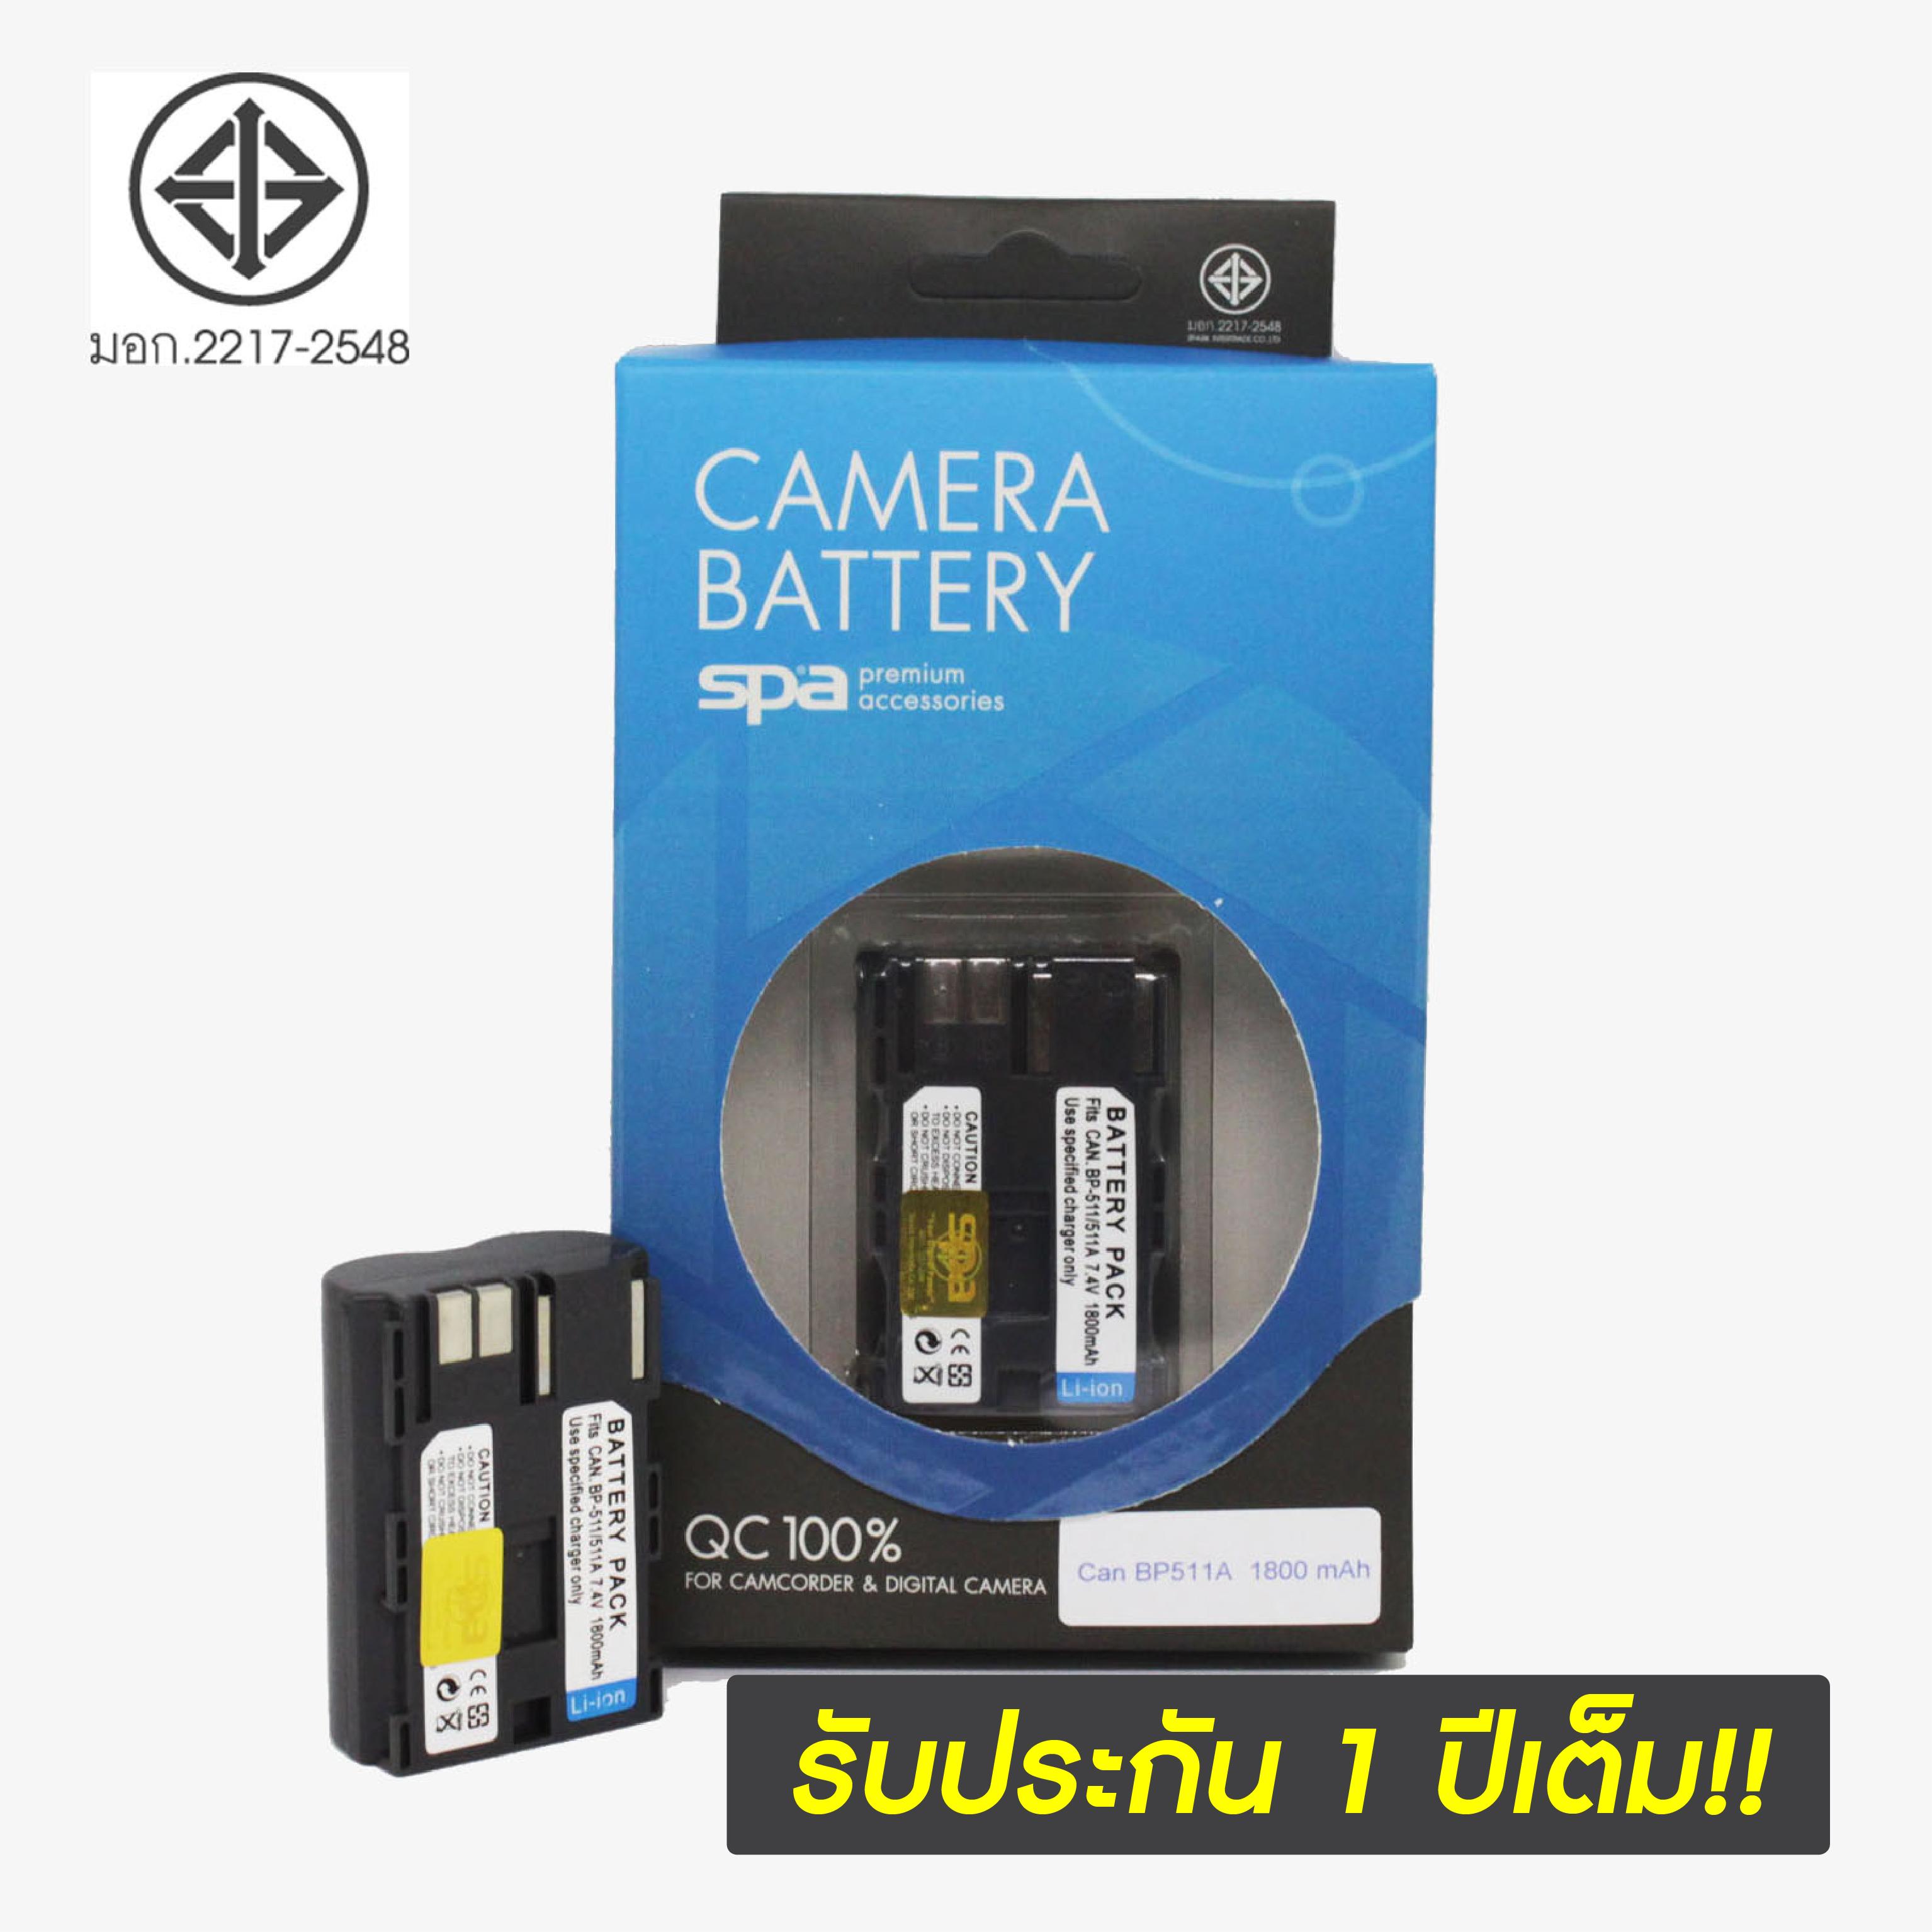 แบตเตอรี่กล้อง Canon ยี่ห้อ SPA Battery รหัส BP-511A Replacement Battery ใช้กับ Canon D-SLR EOS 20D, EOS 30D , EOS 40D , EOS 50D, EOS 300D , Rebel FV100 , FV200 , FV300 , FV30